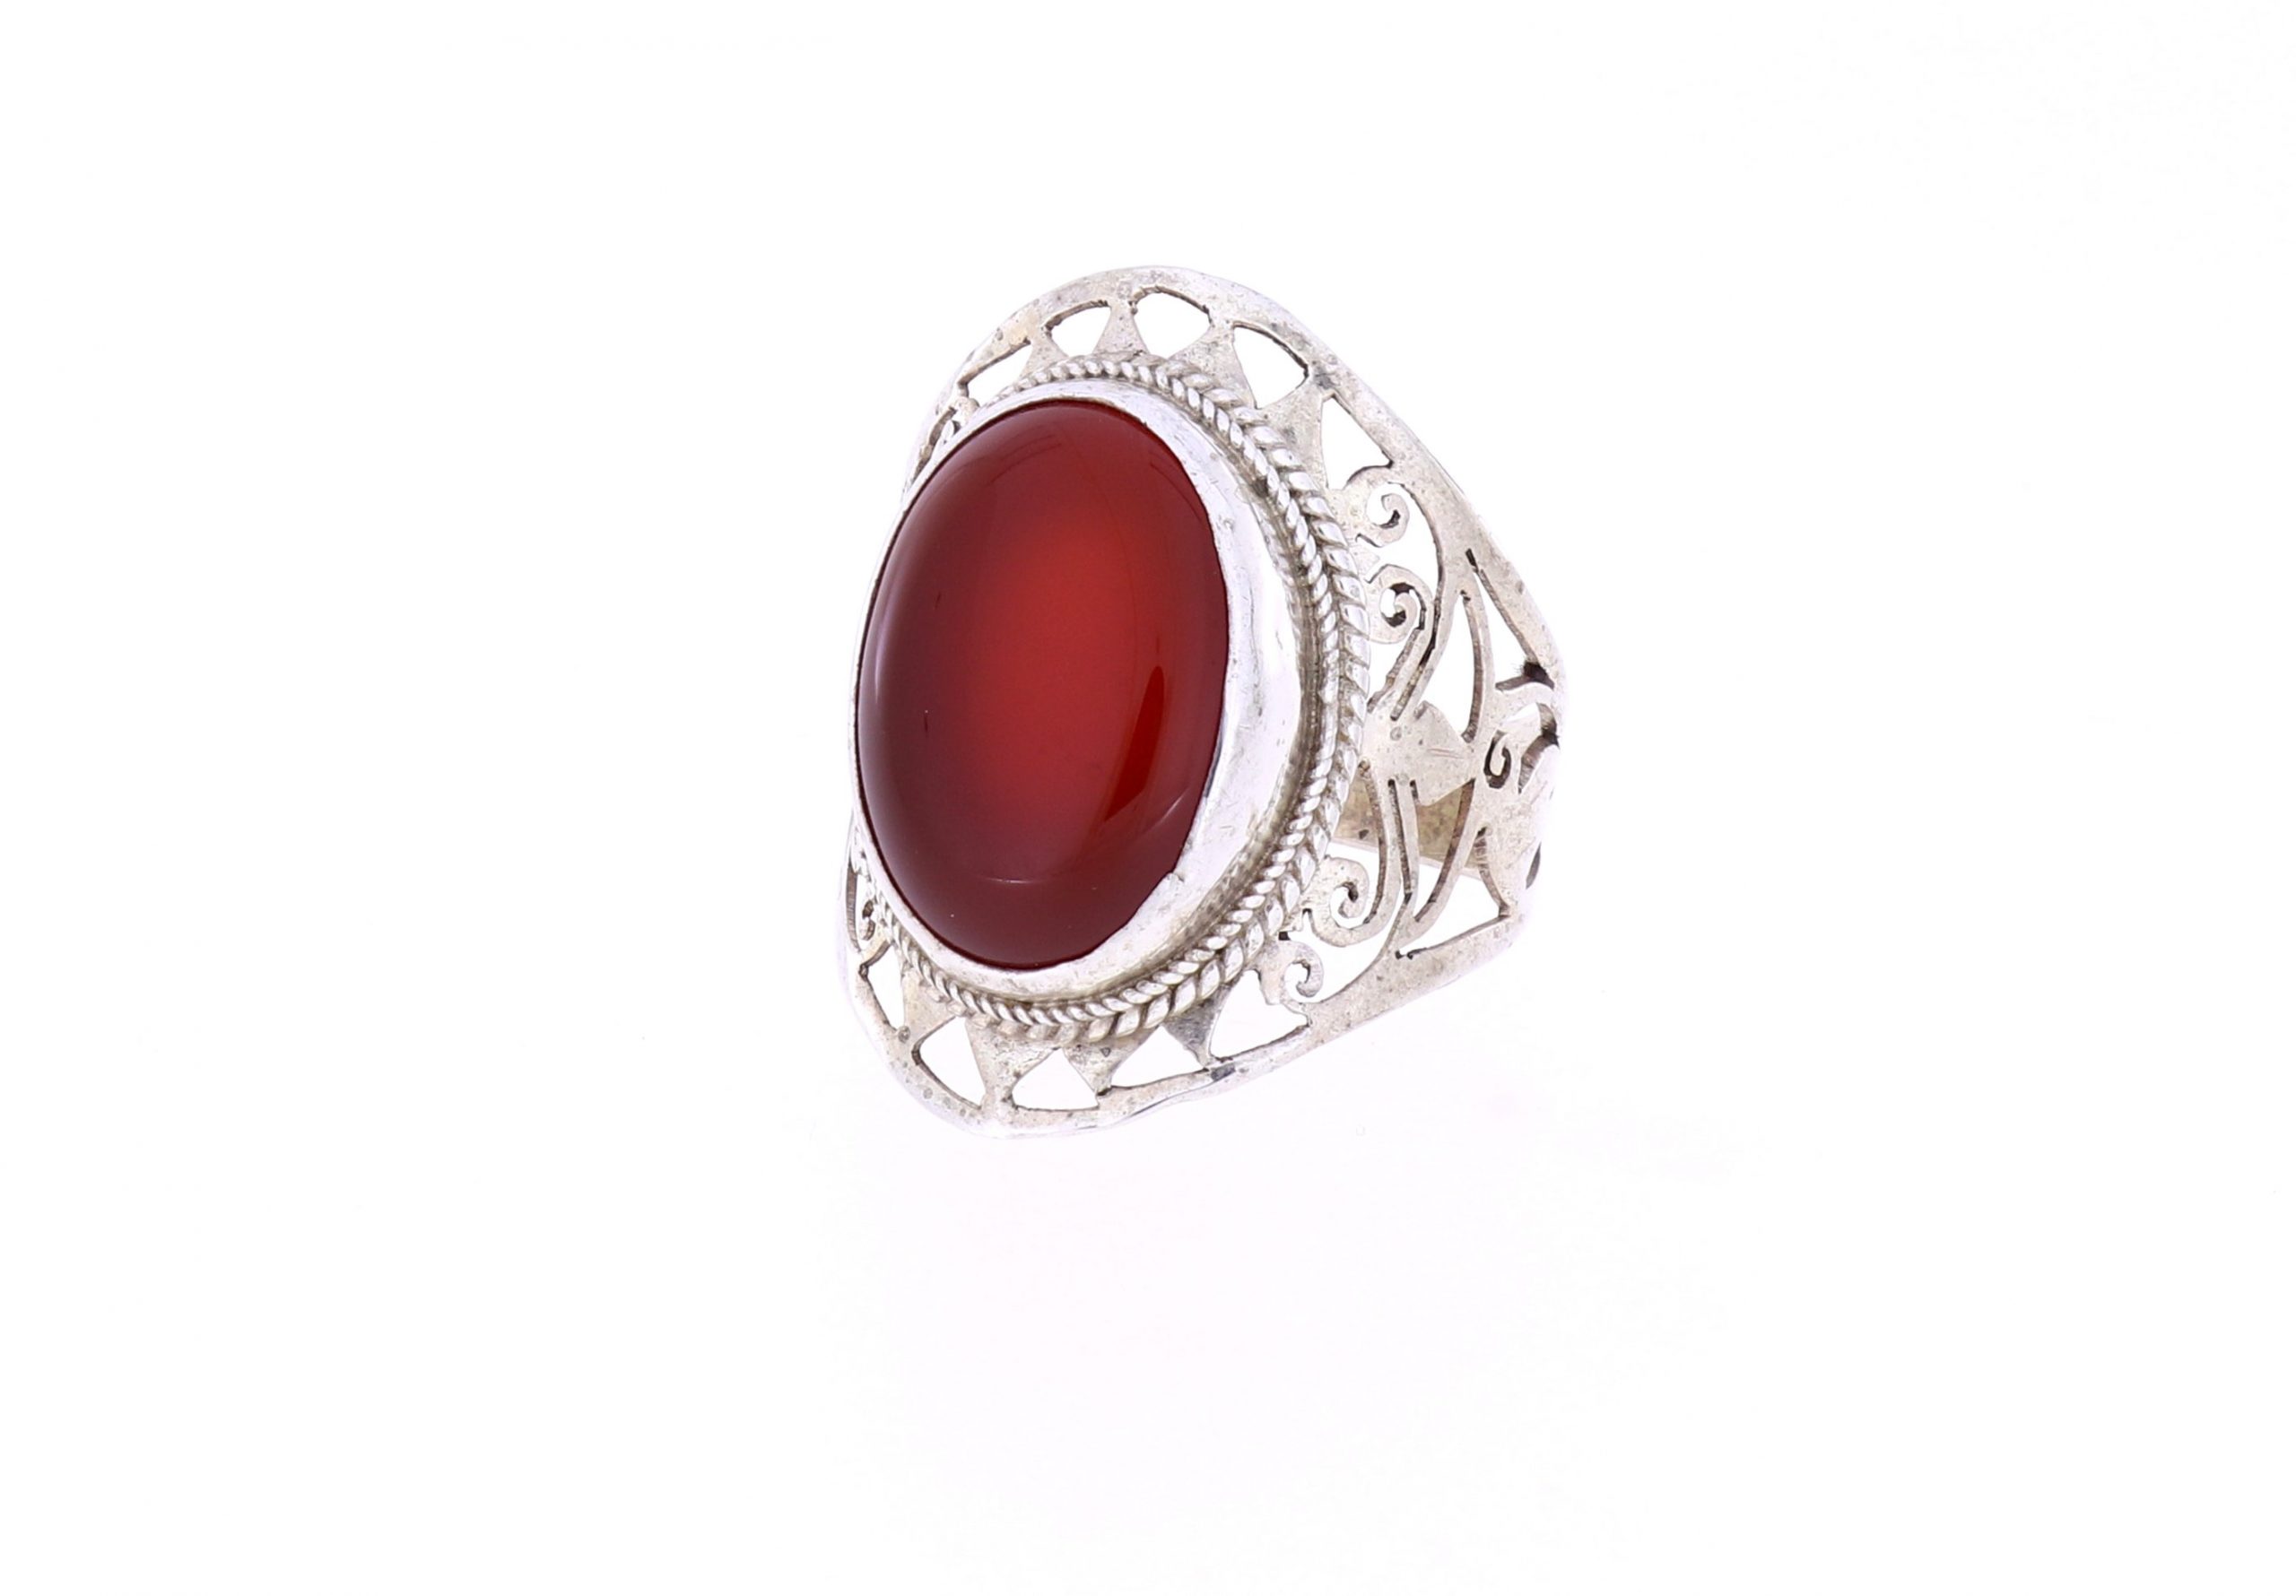 Schöner Ring mit Carneol in hellen rot filigrane Fassung Silber Größe 64 - 11